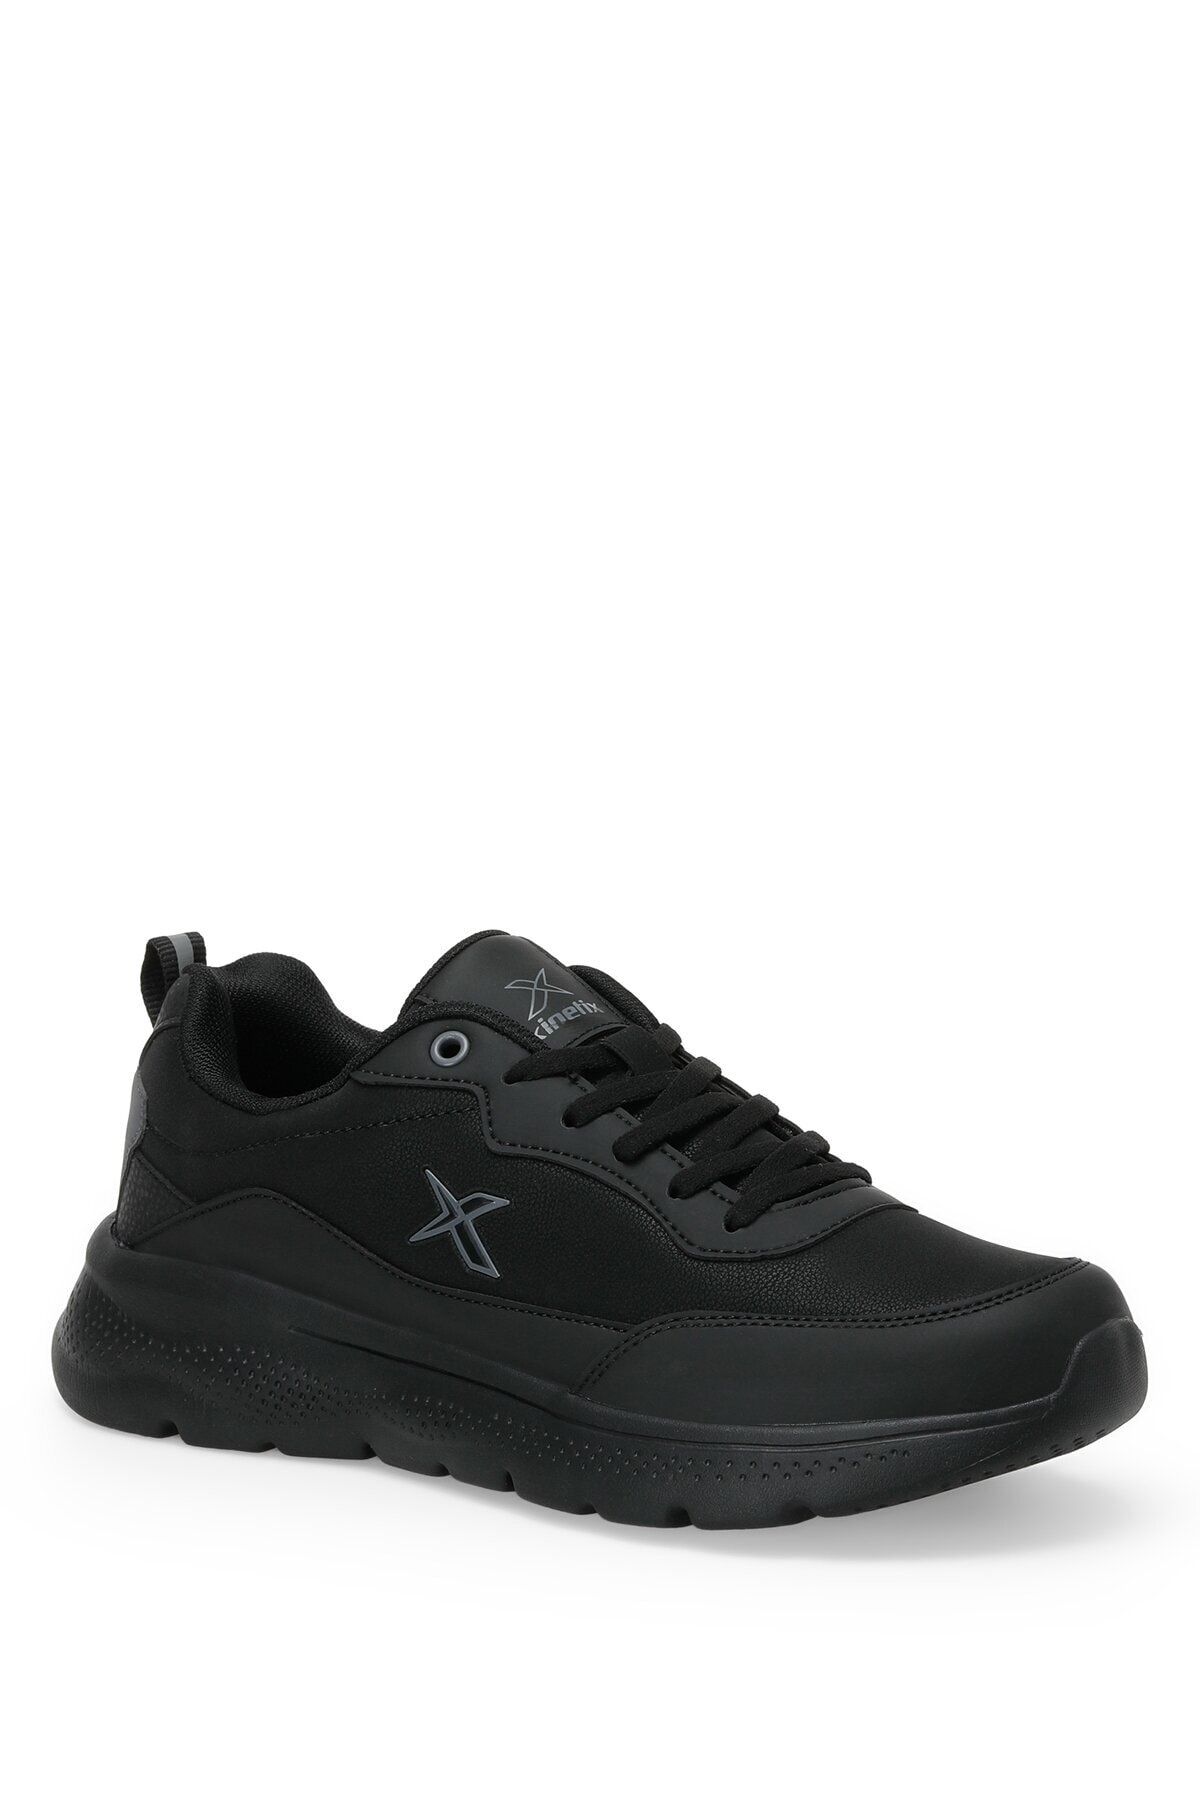 Kinetix - Alfıe Pu 2pr Siyah - K.gri Erkek Sneaker Ayakkabı